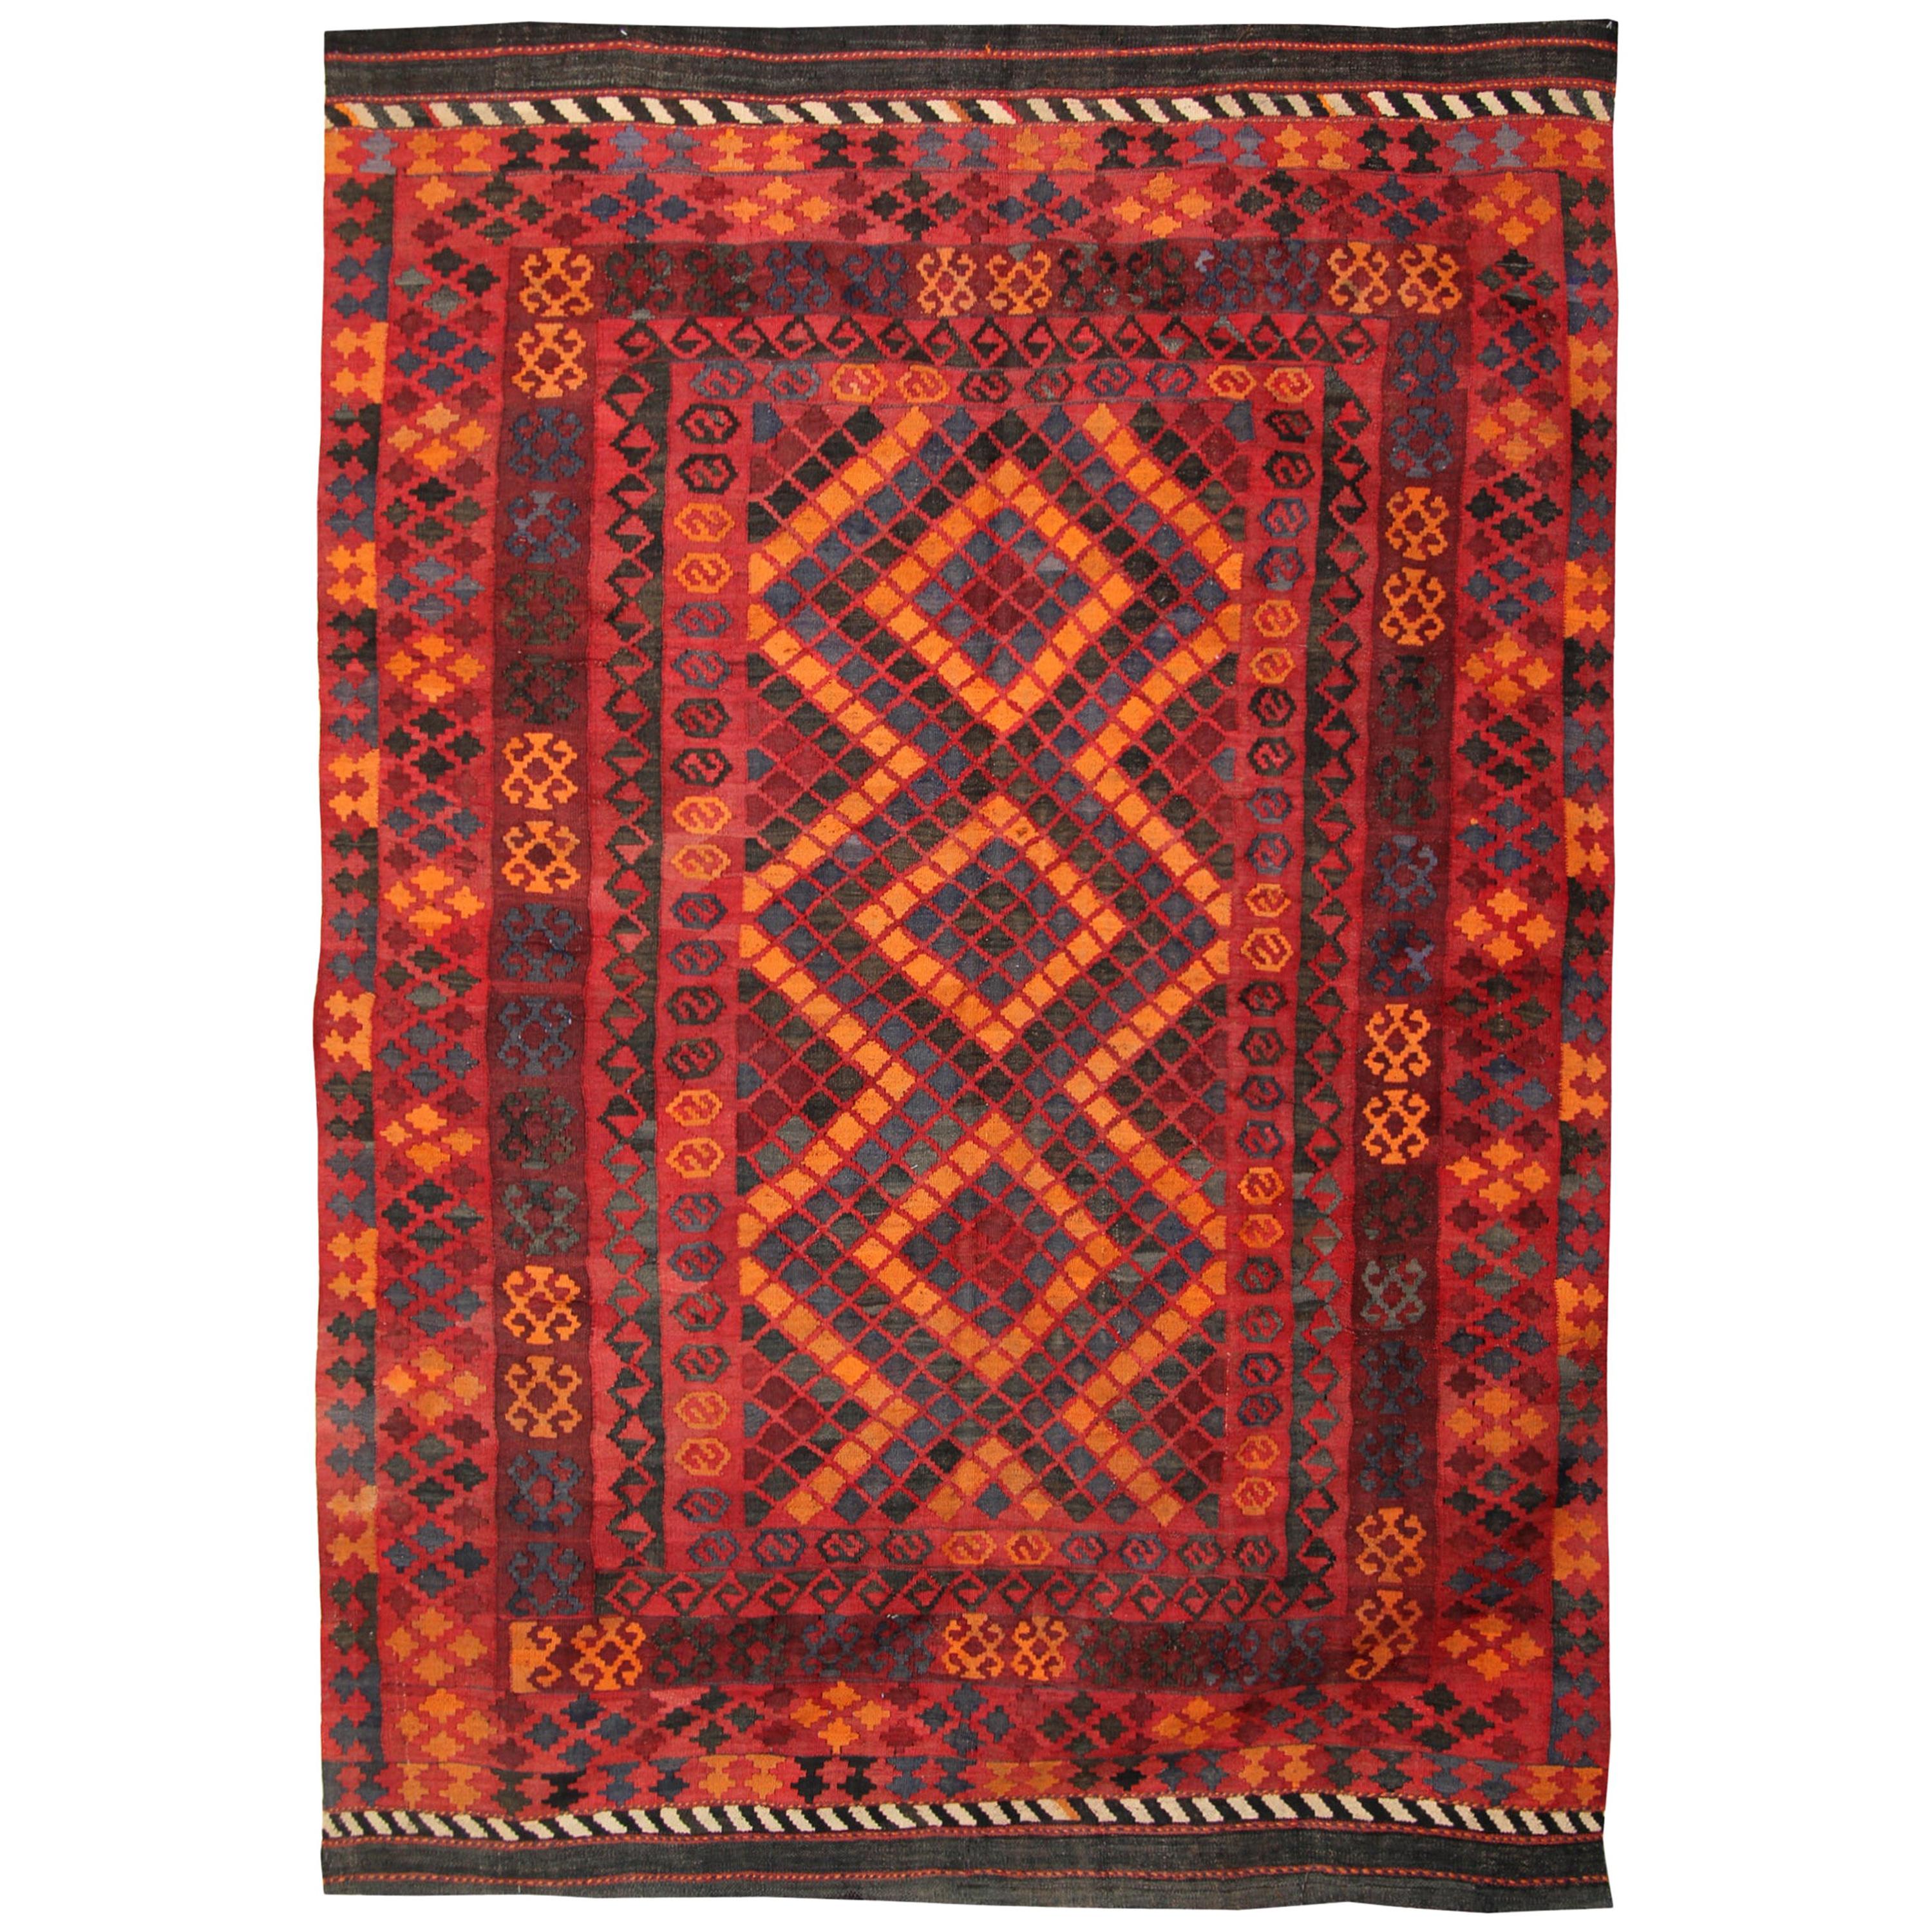 Vintage Rugs, Handmade Carpet Kilim Rugs Turkish Kilim Living Room Rugs